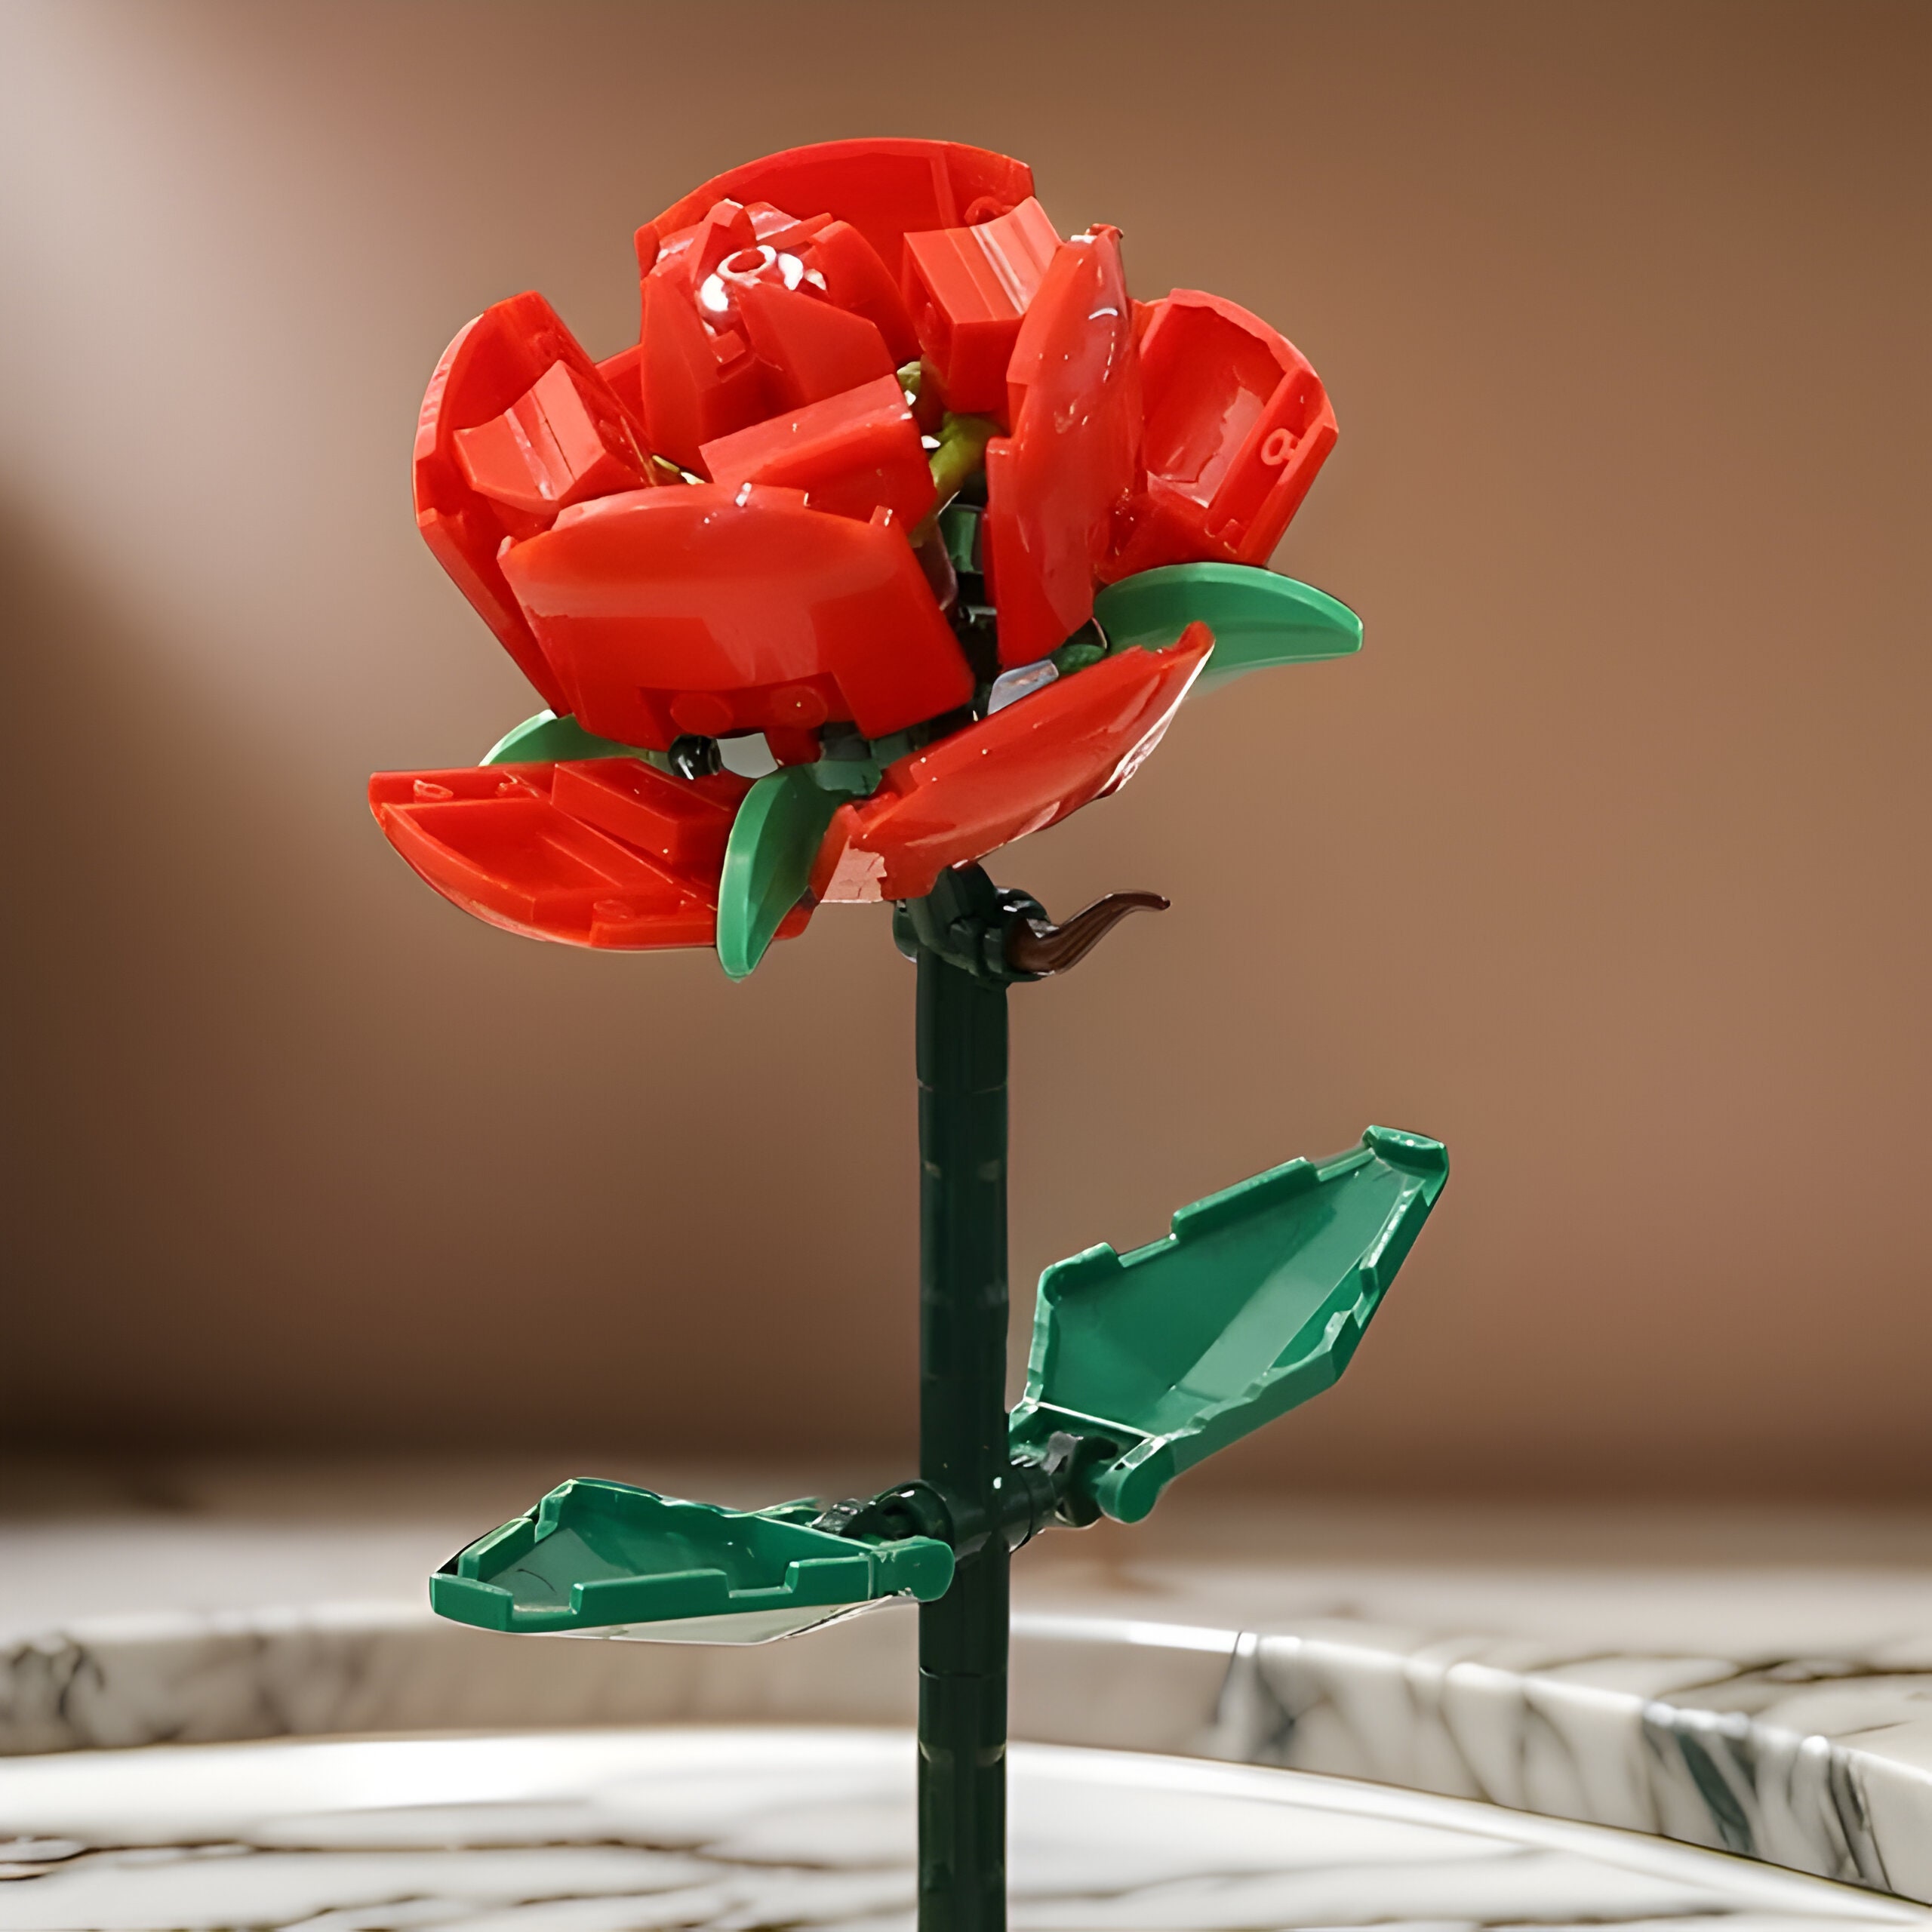 Rose Building Blocks, DIY Plant Pot Bouquet, Montessori Assembled ...